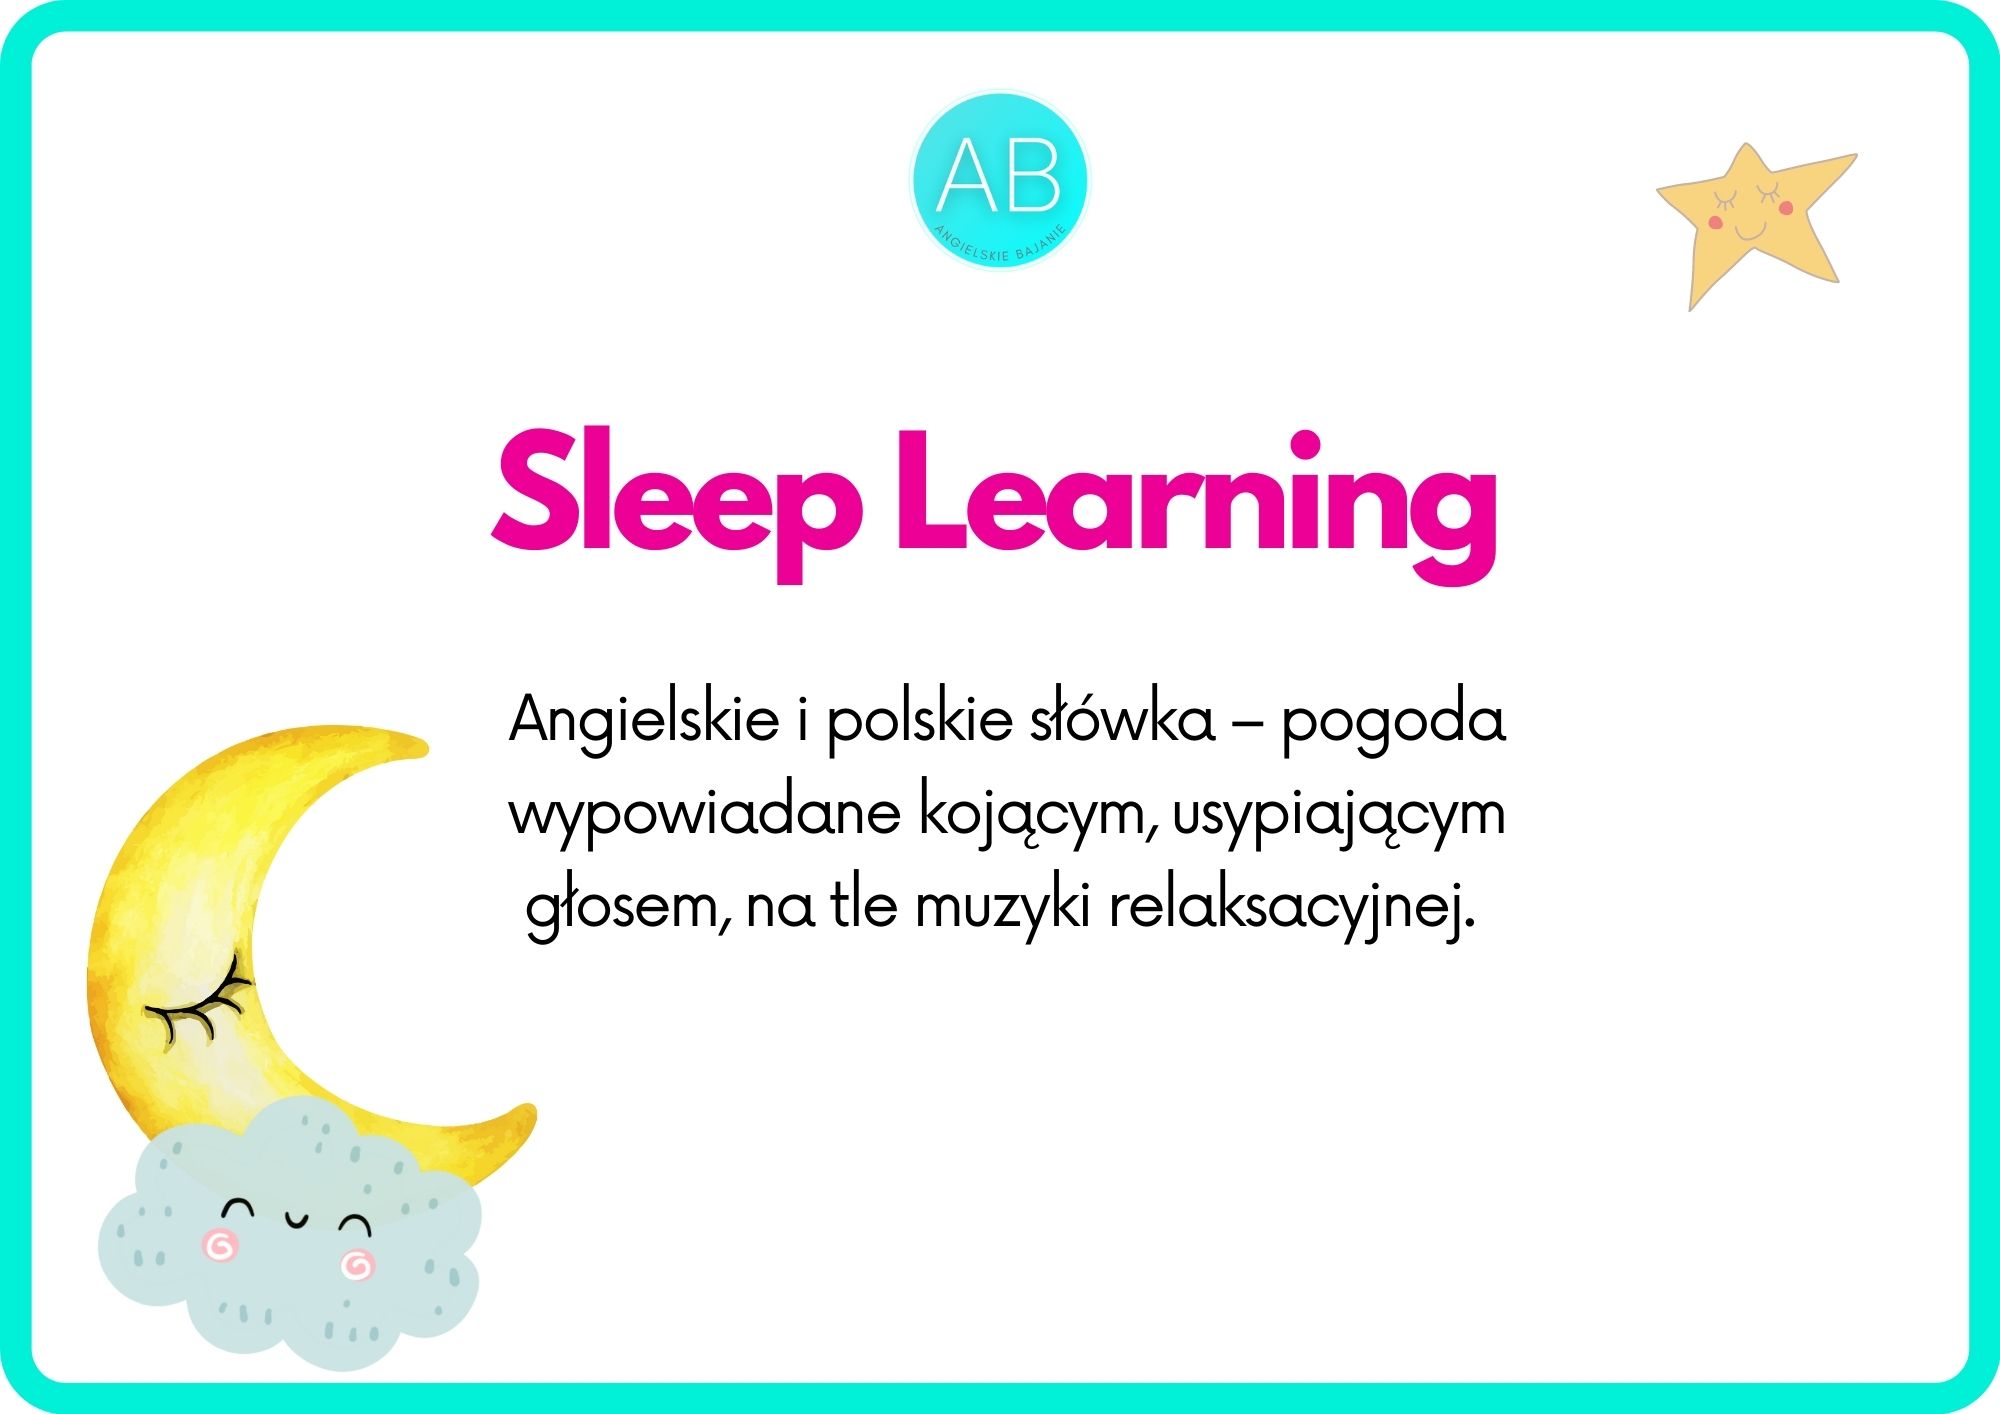 Sleep learning weather